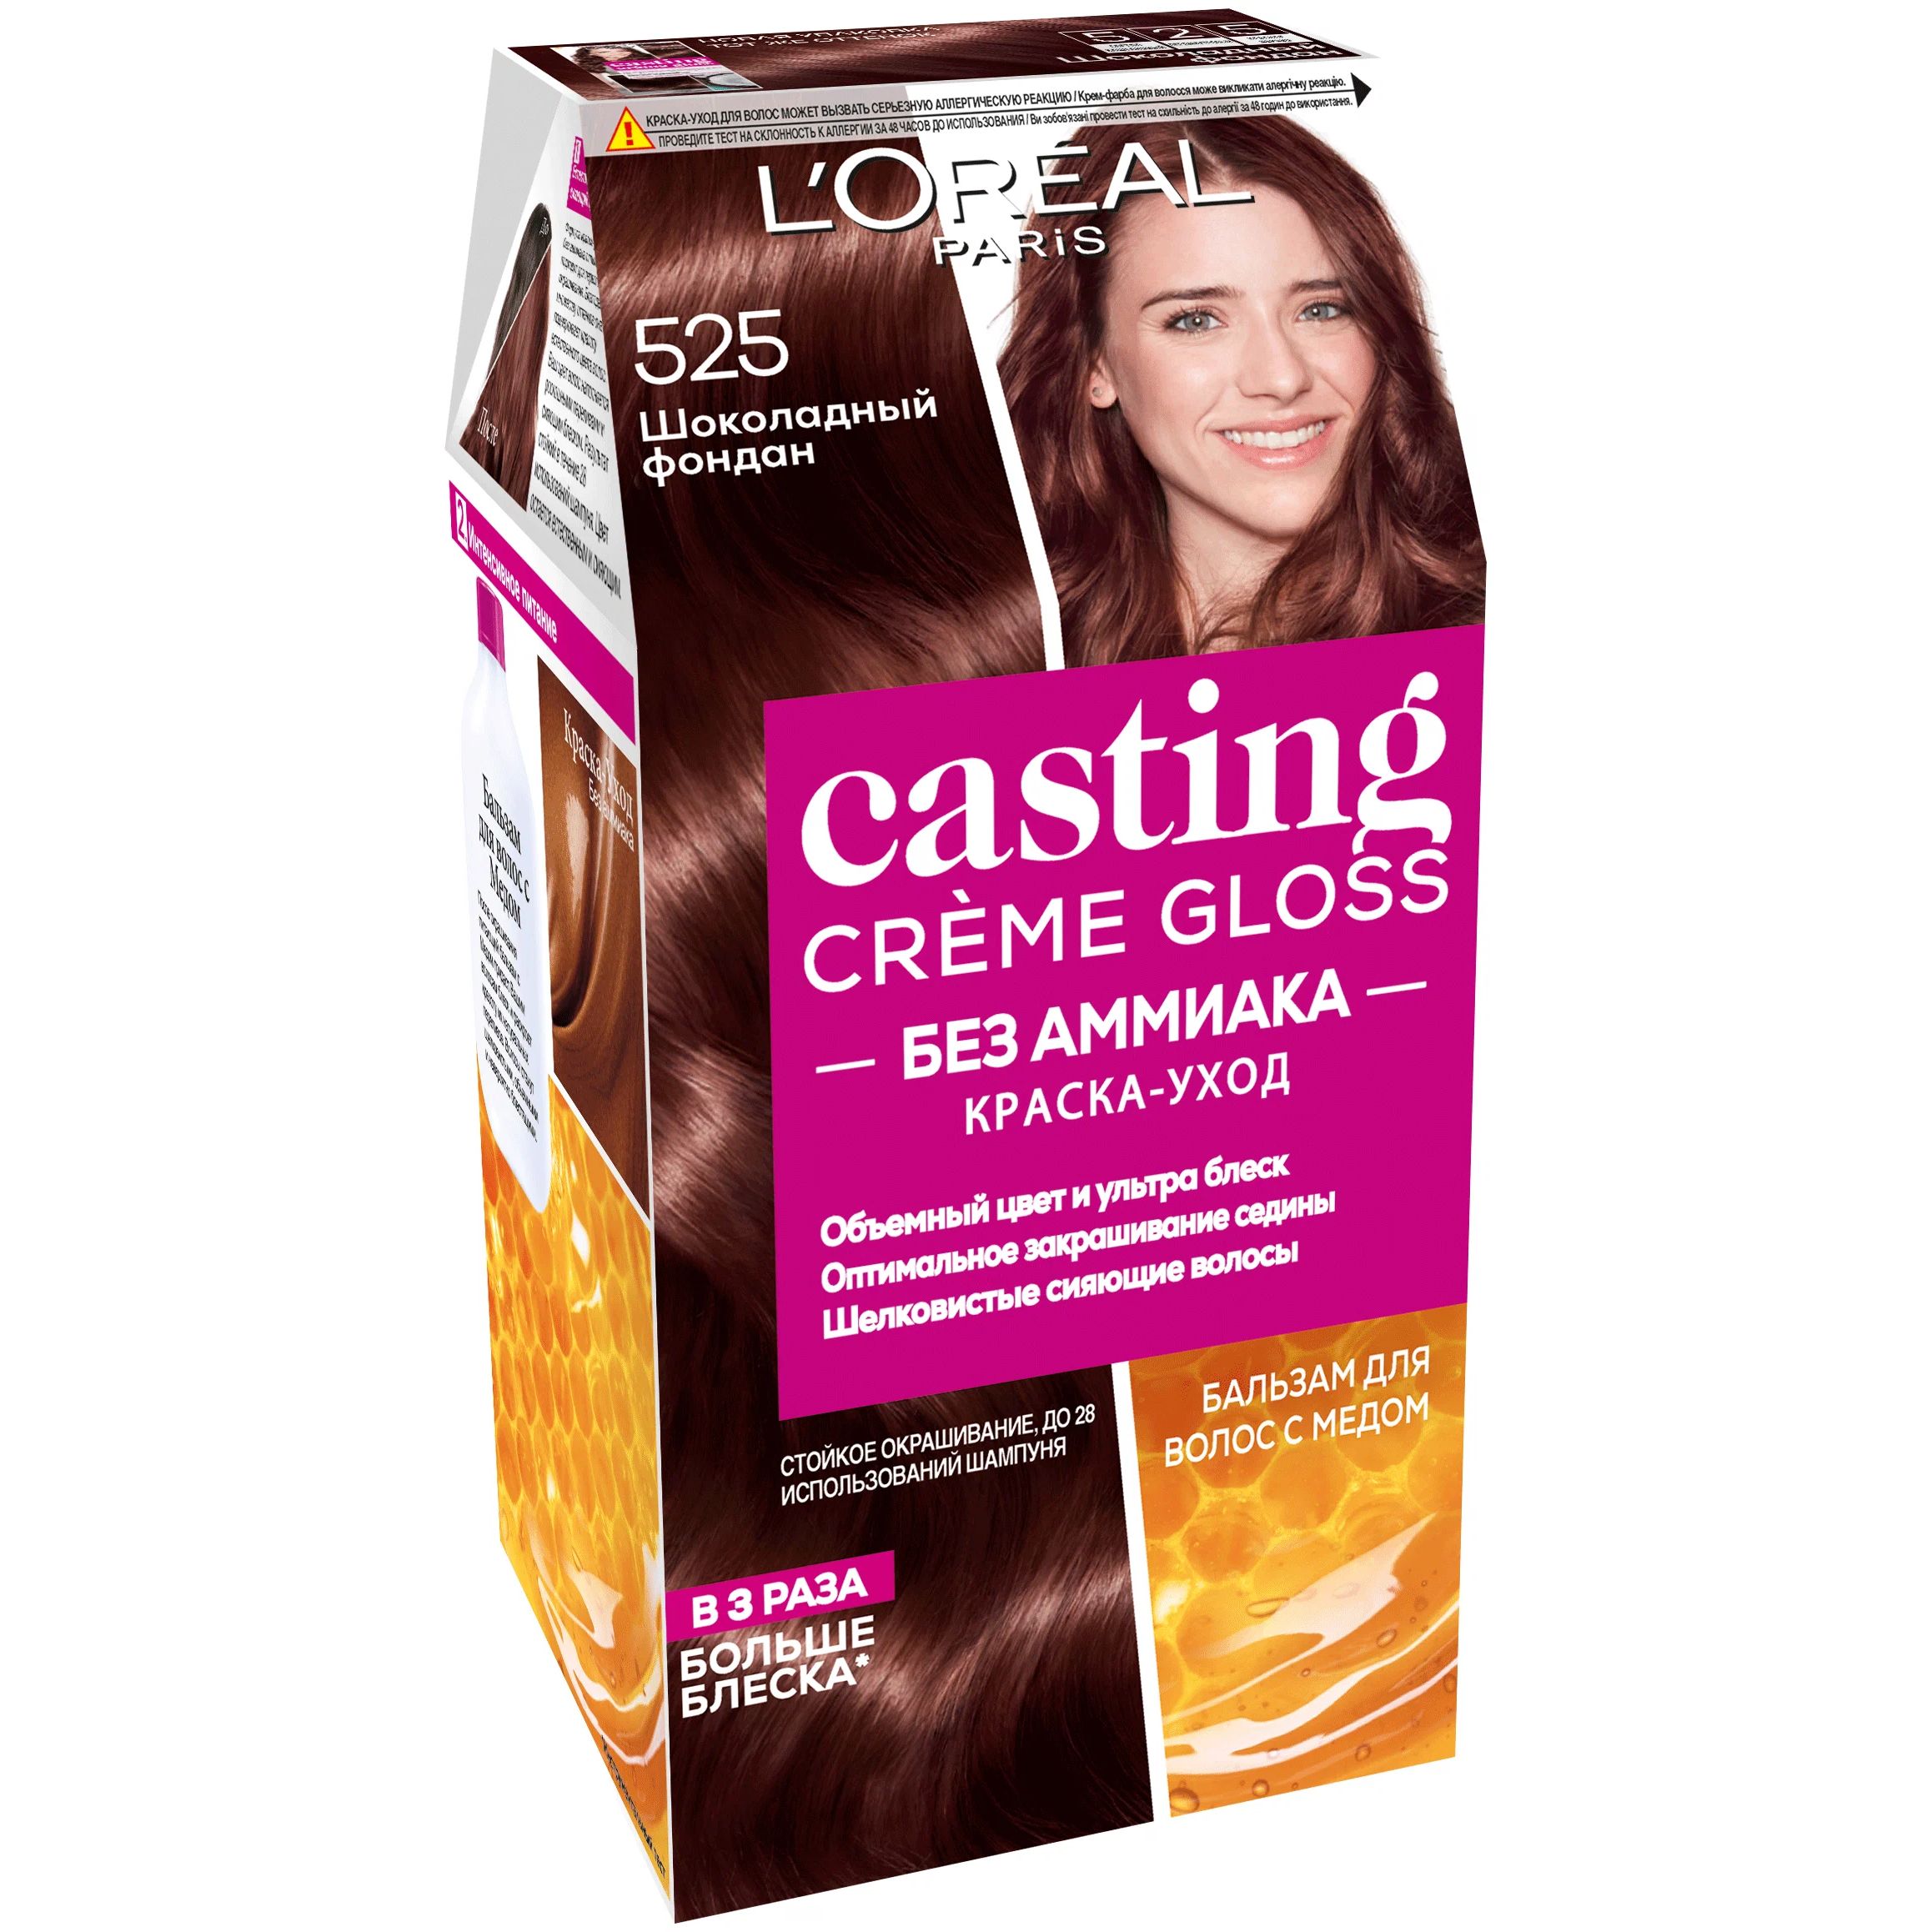 Краска-уход для волос L'Oreal Paris Casting Creme Gloss, 525 шоколадный фондан, 180 мл турбослим батончик 50 г шоколадный кекс